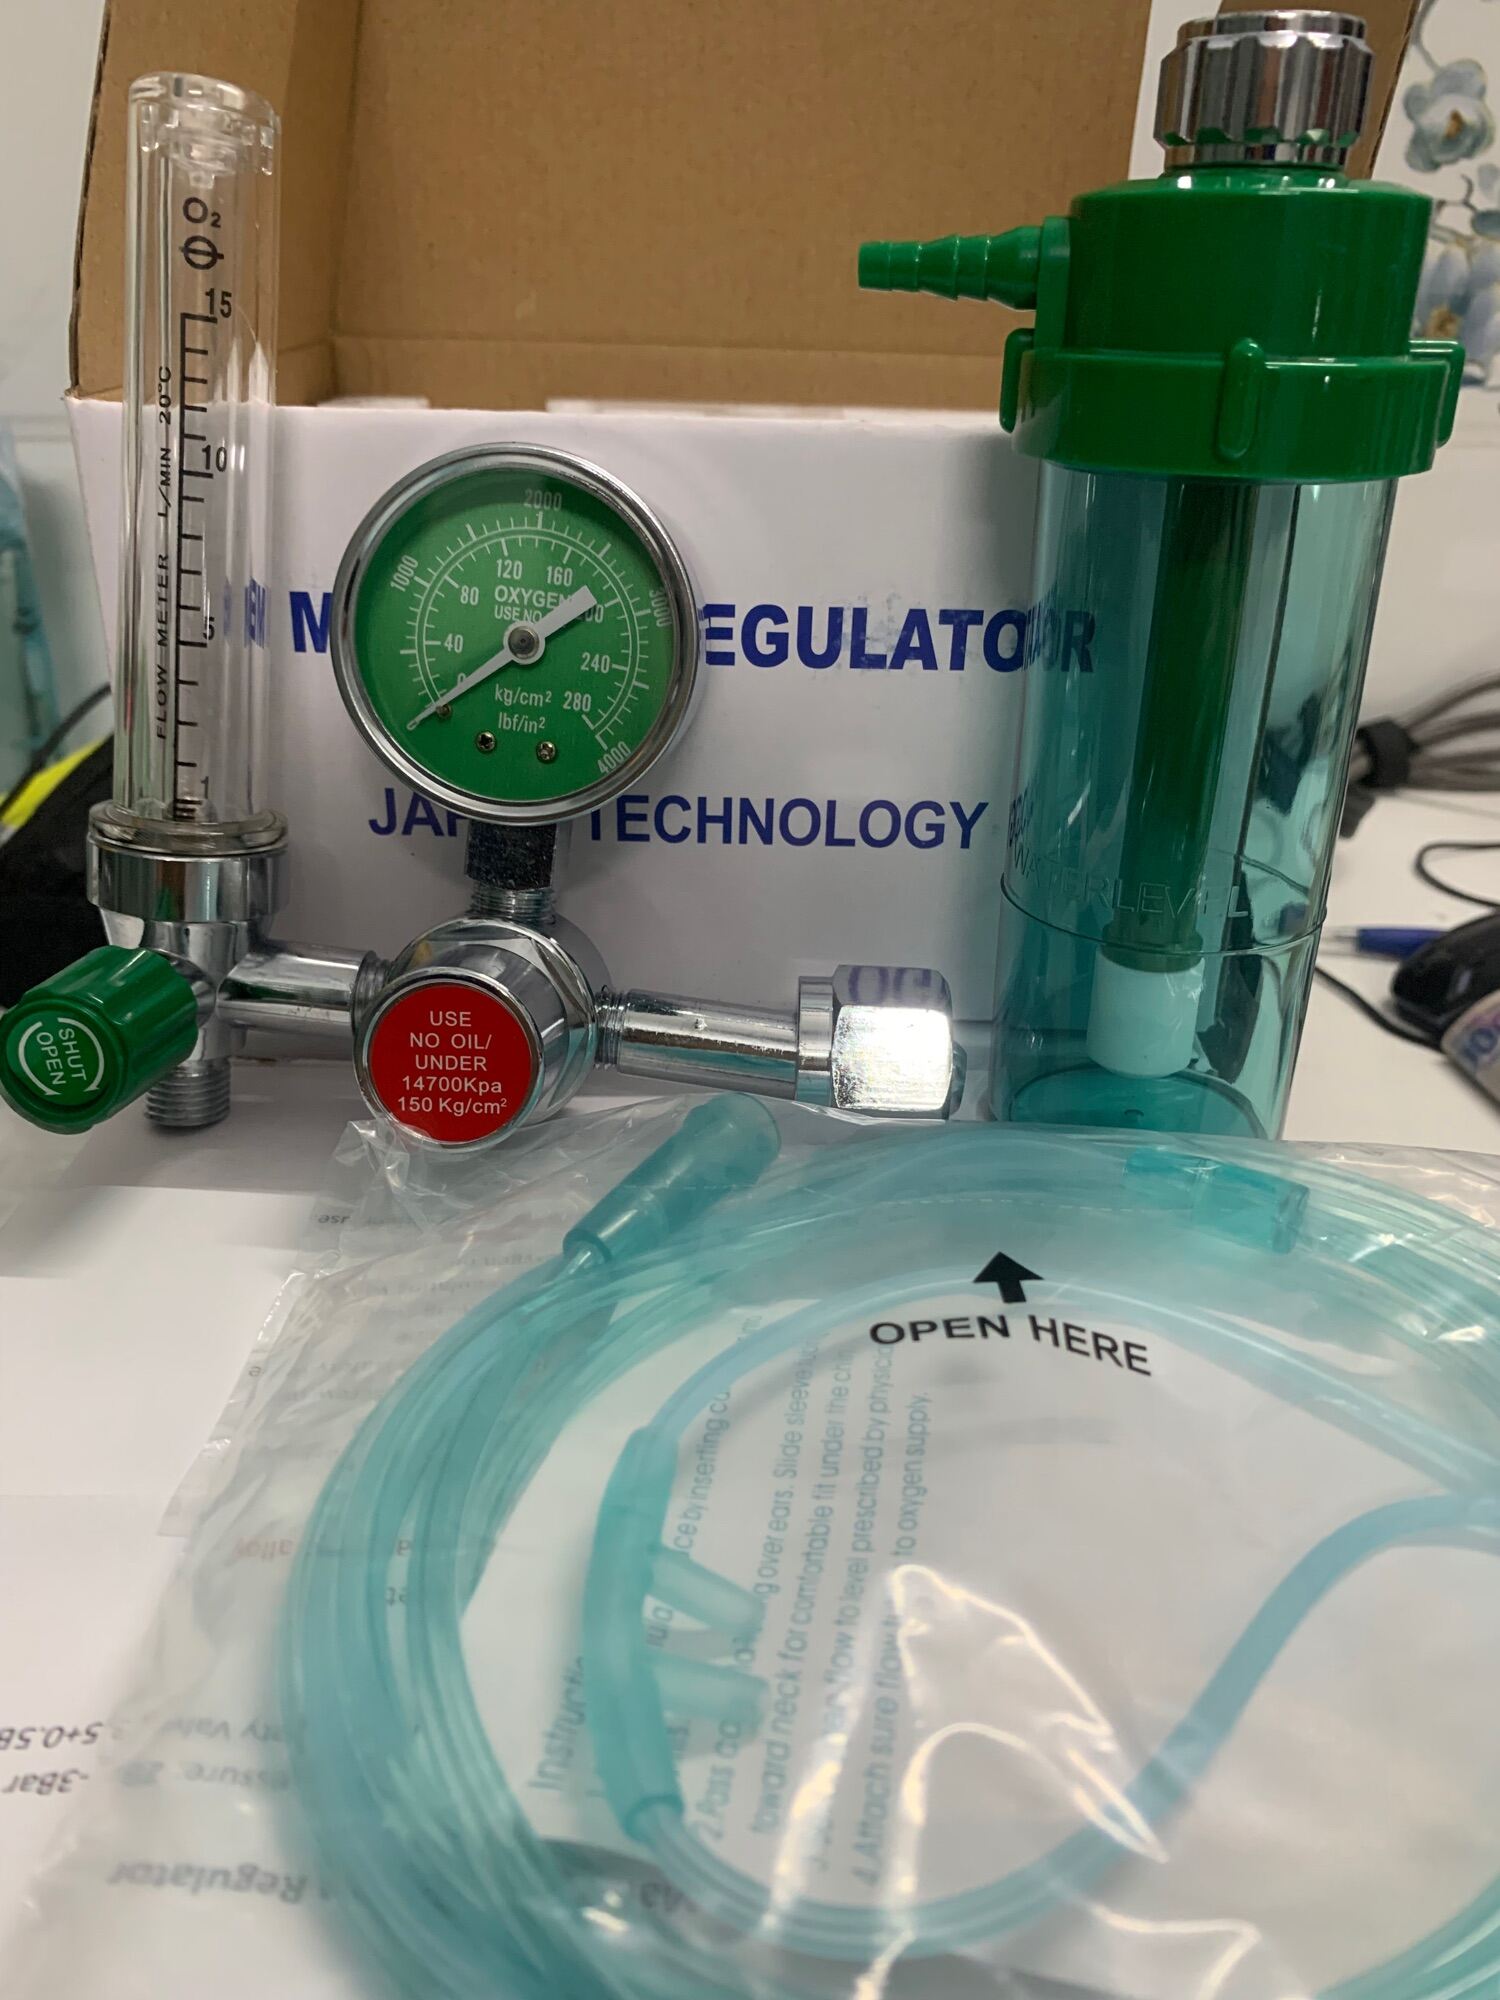 Đồng hồ oxy y tế đo áp suất bình khí Medical Regulator Japan Technology